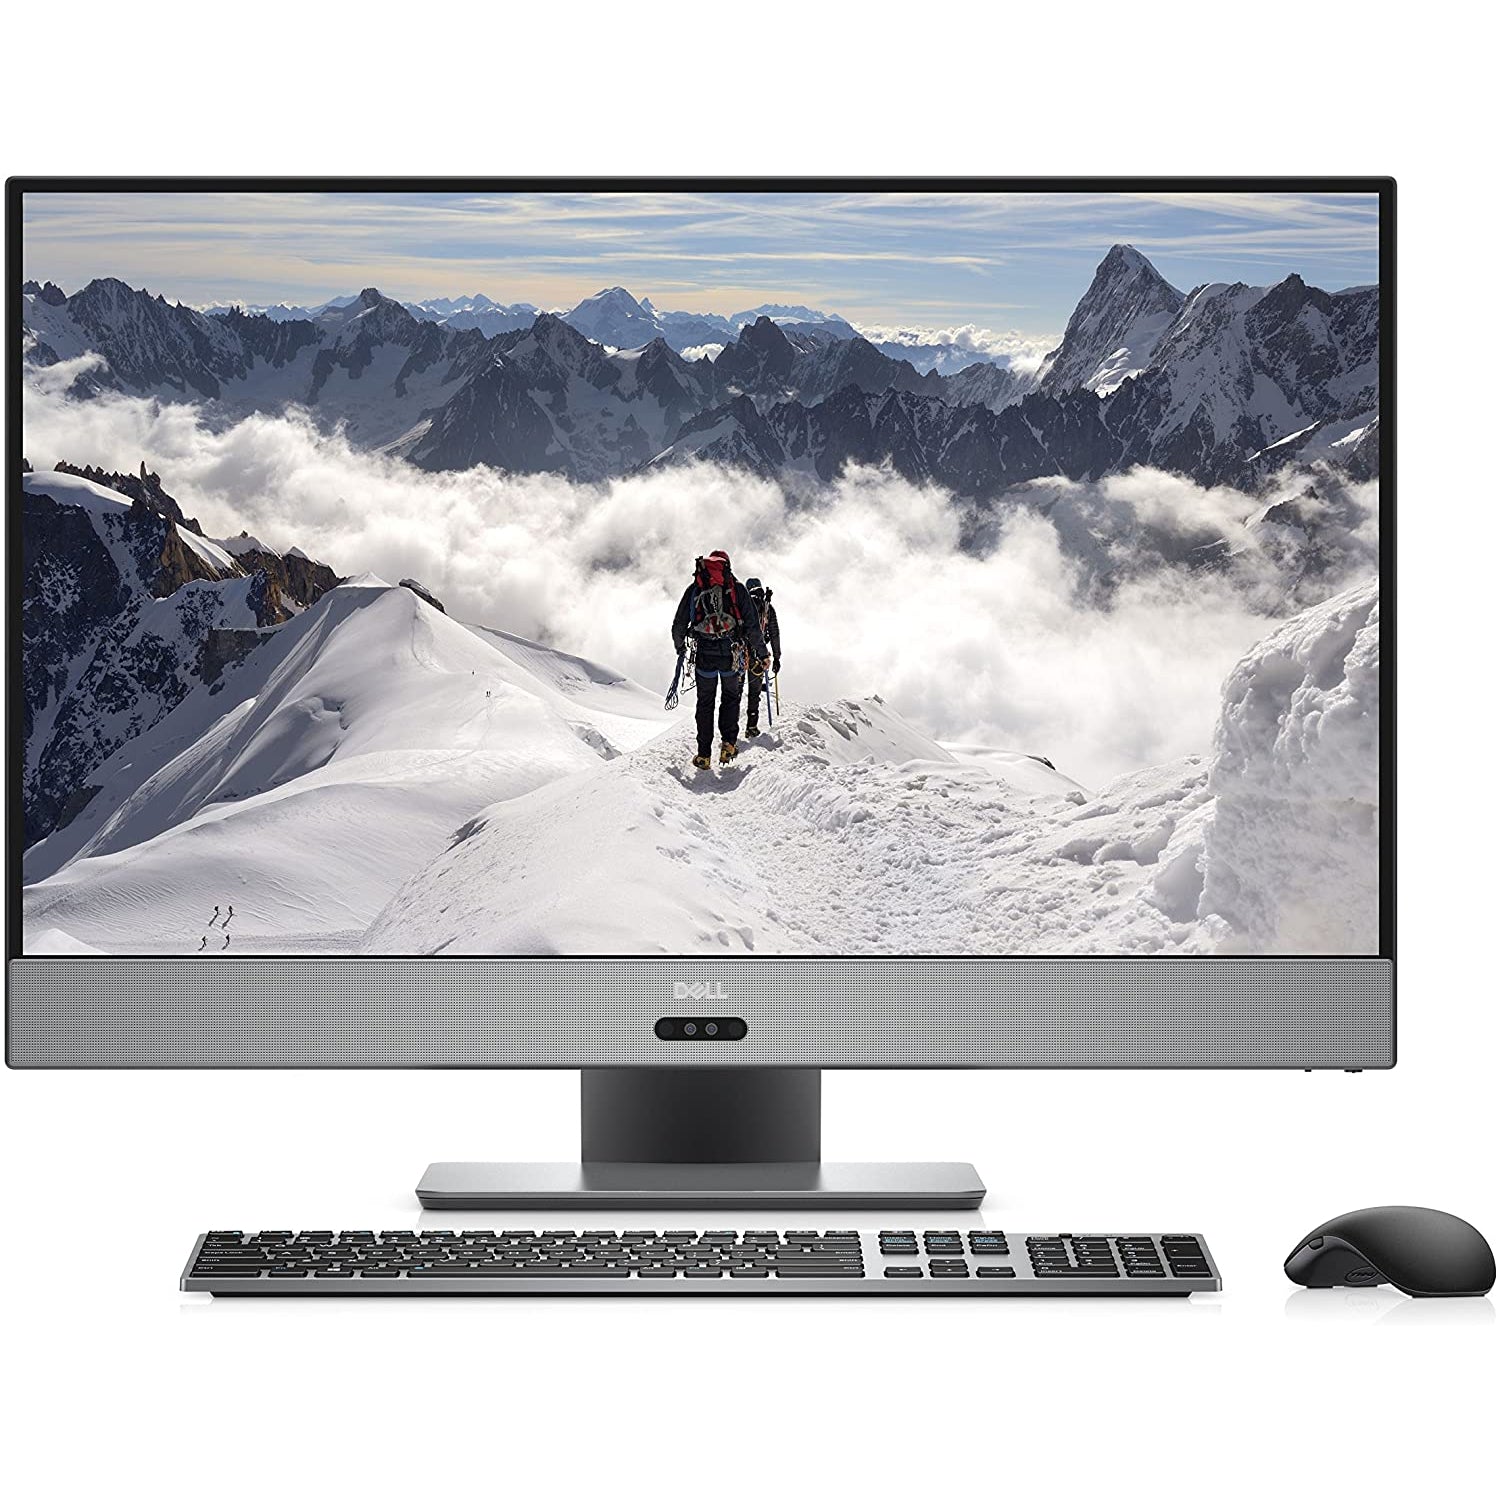 Dell Inspiron 7000 27-Inch 4K Ultra HD Gaming All-in-One Desktop - (AMD Ryzen 7 1700 Processor, 16 GB RAM, 1 TB HDD + 256 GB HDD